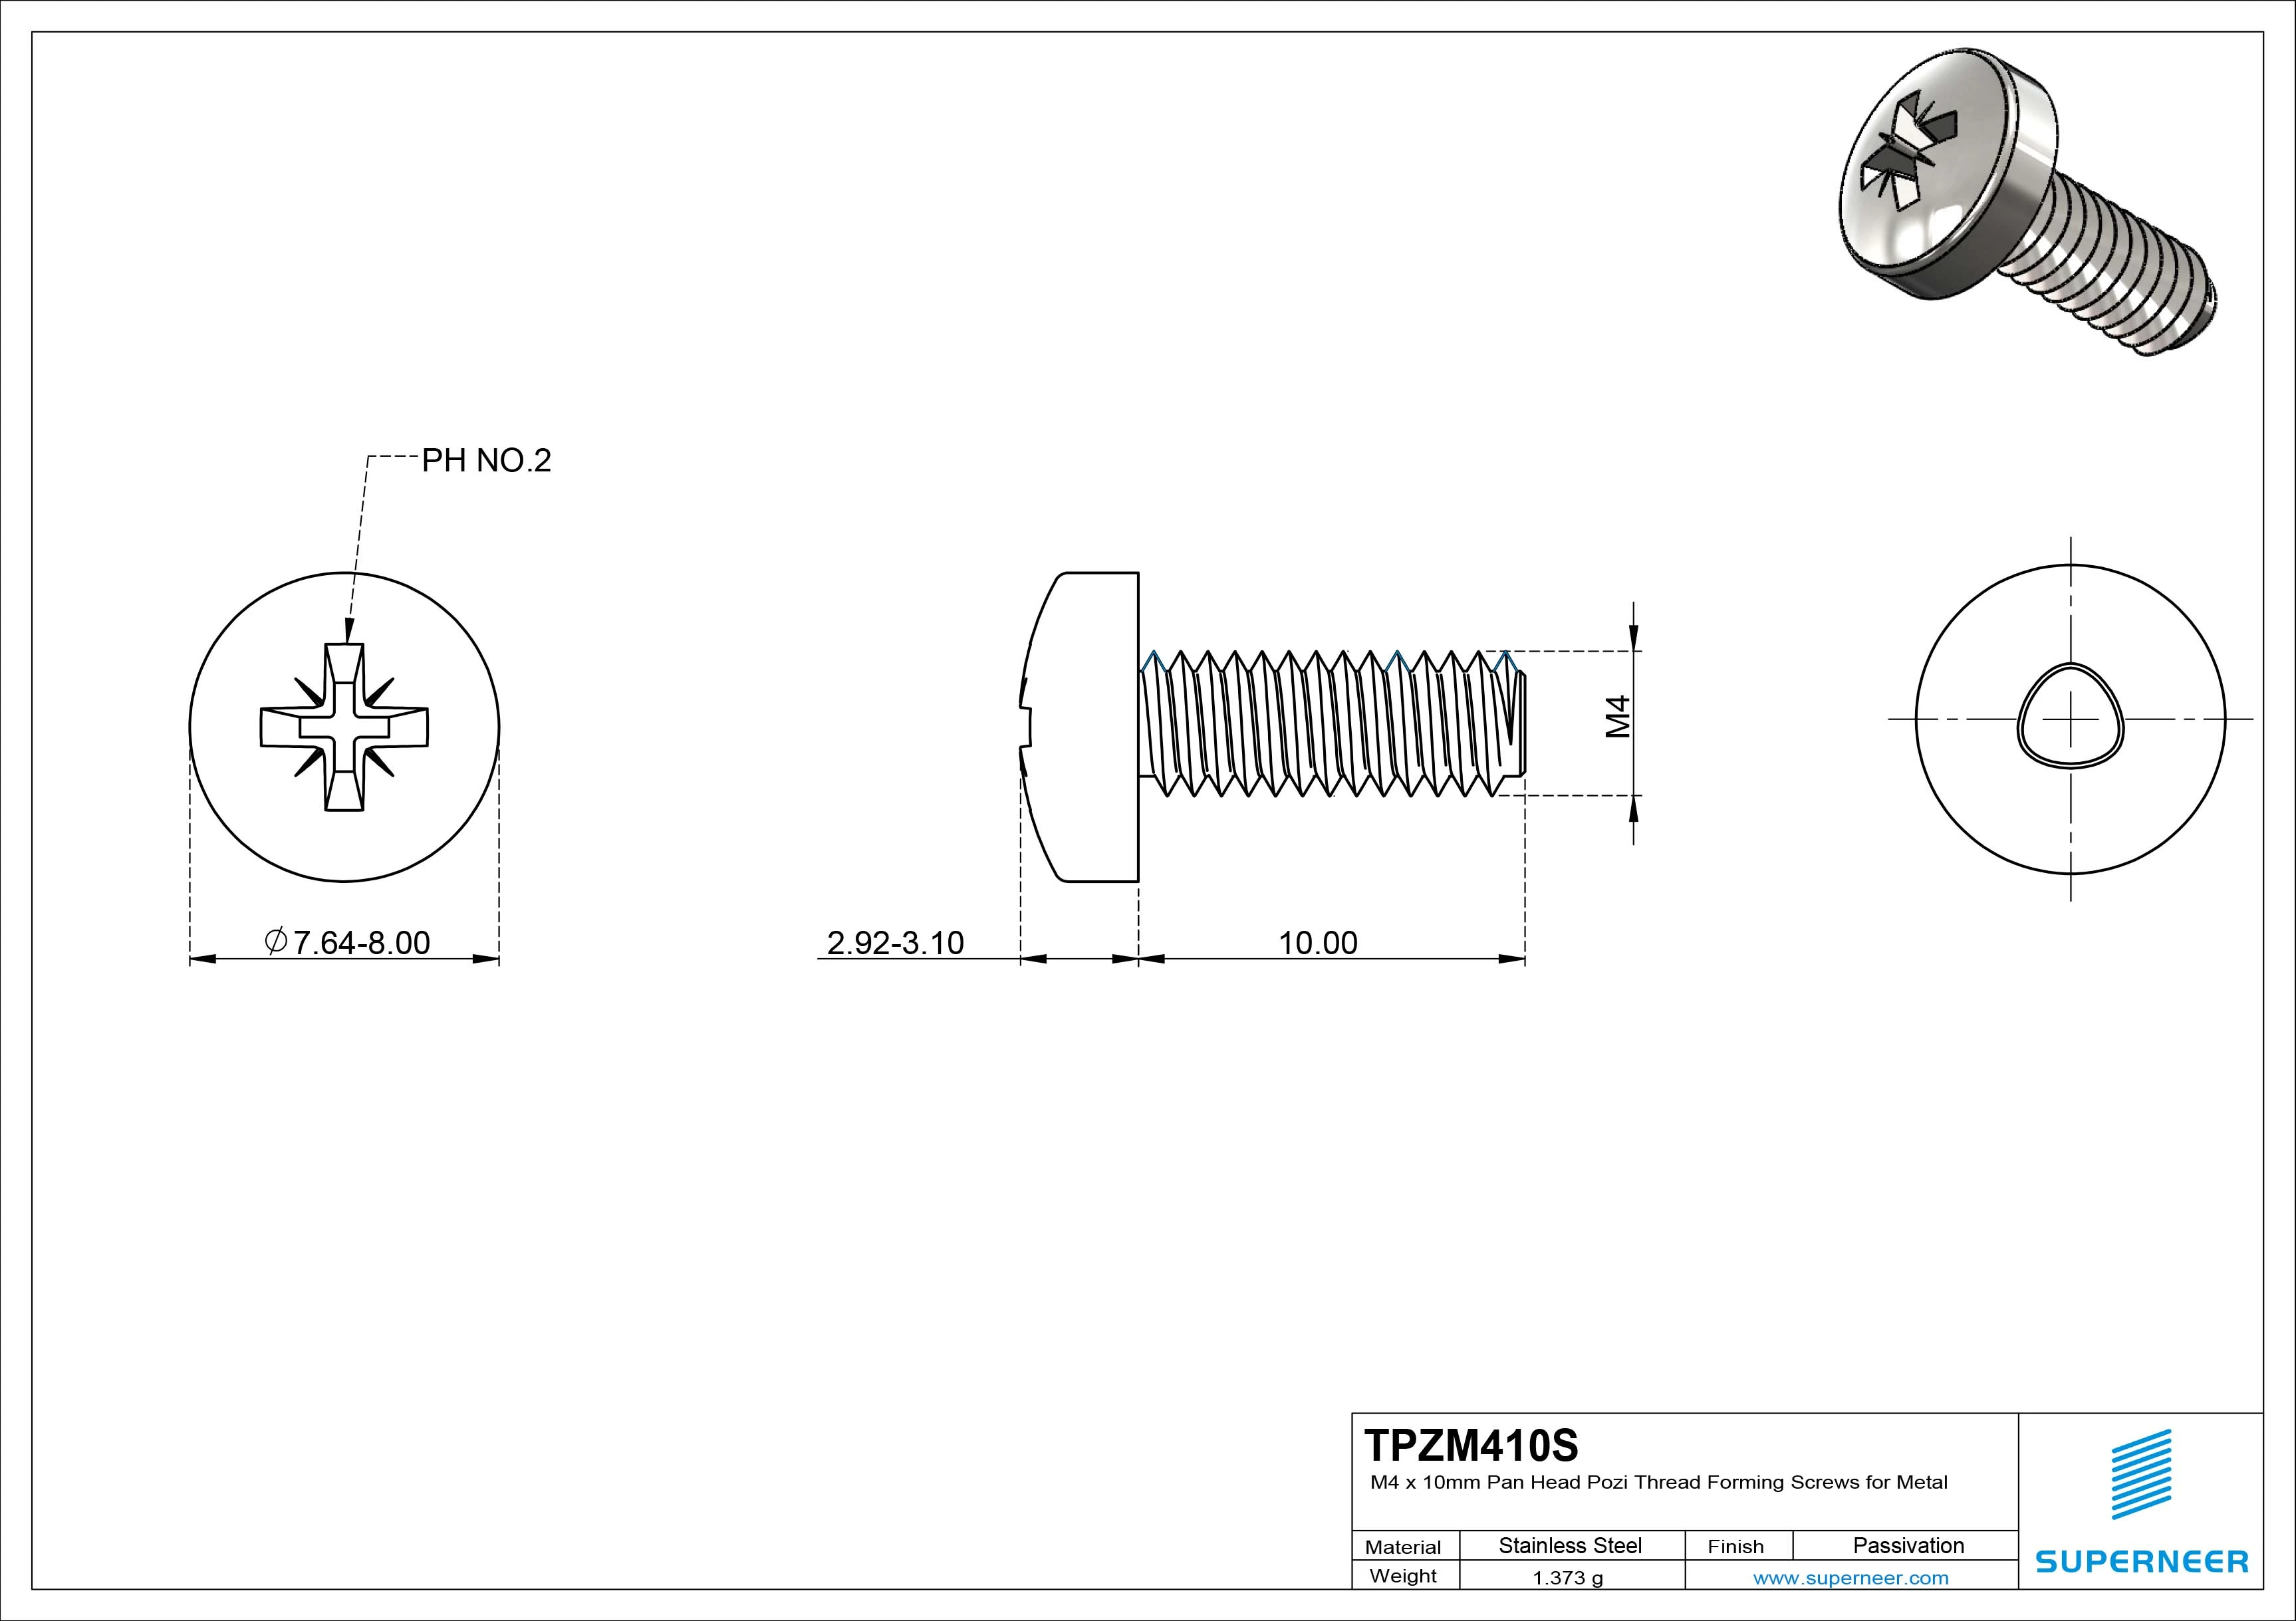 M4 × 10mm Pan Head Pozi Thread Forming Screws for Metal SUS304 Stainless Steel Inox